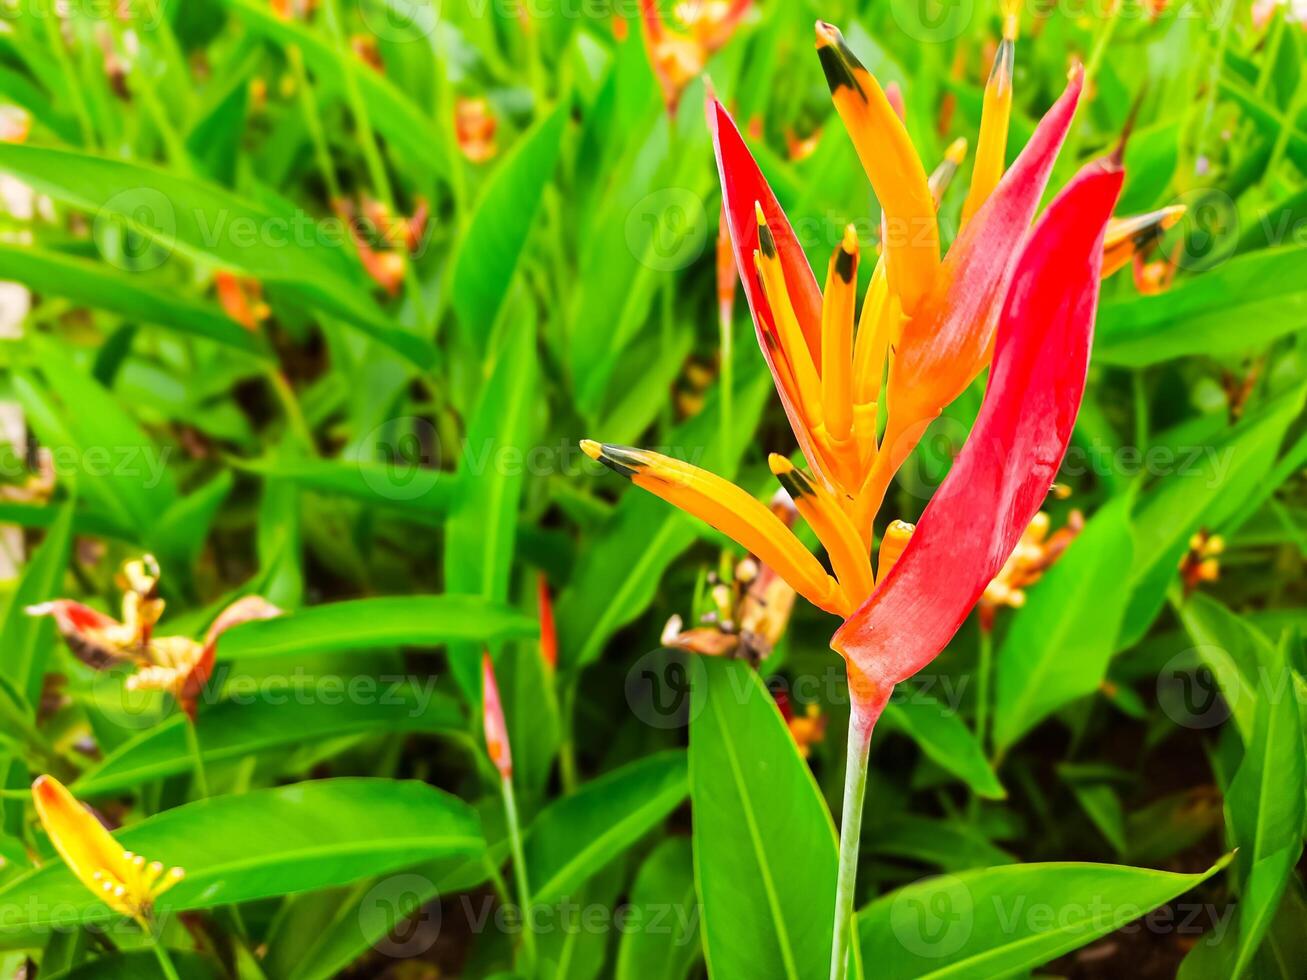 mooi bloem in de tuin met roodachtig geel bloem schiet foto